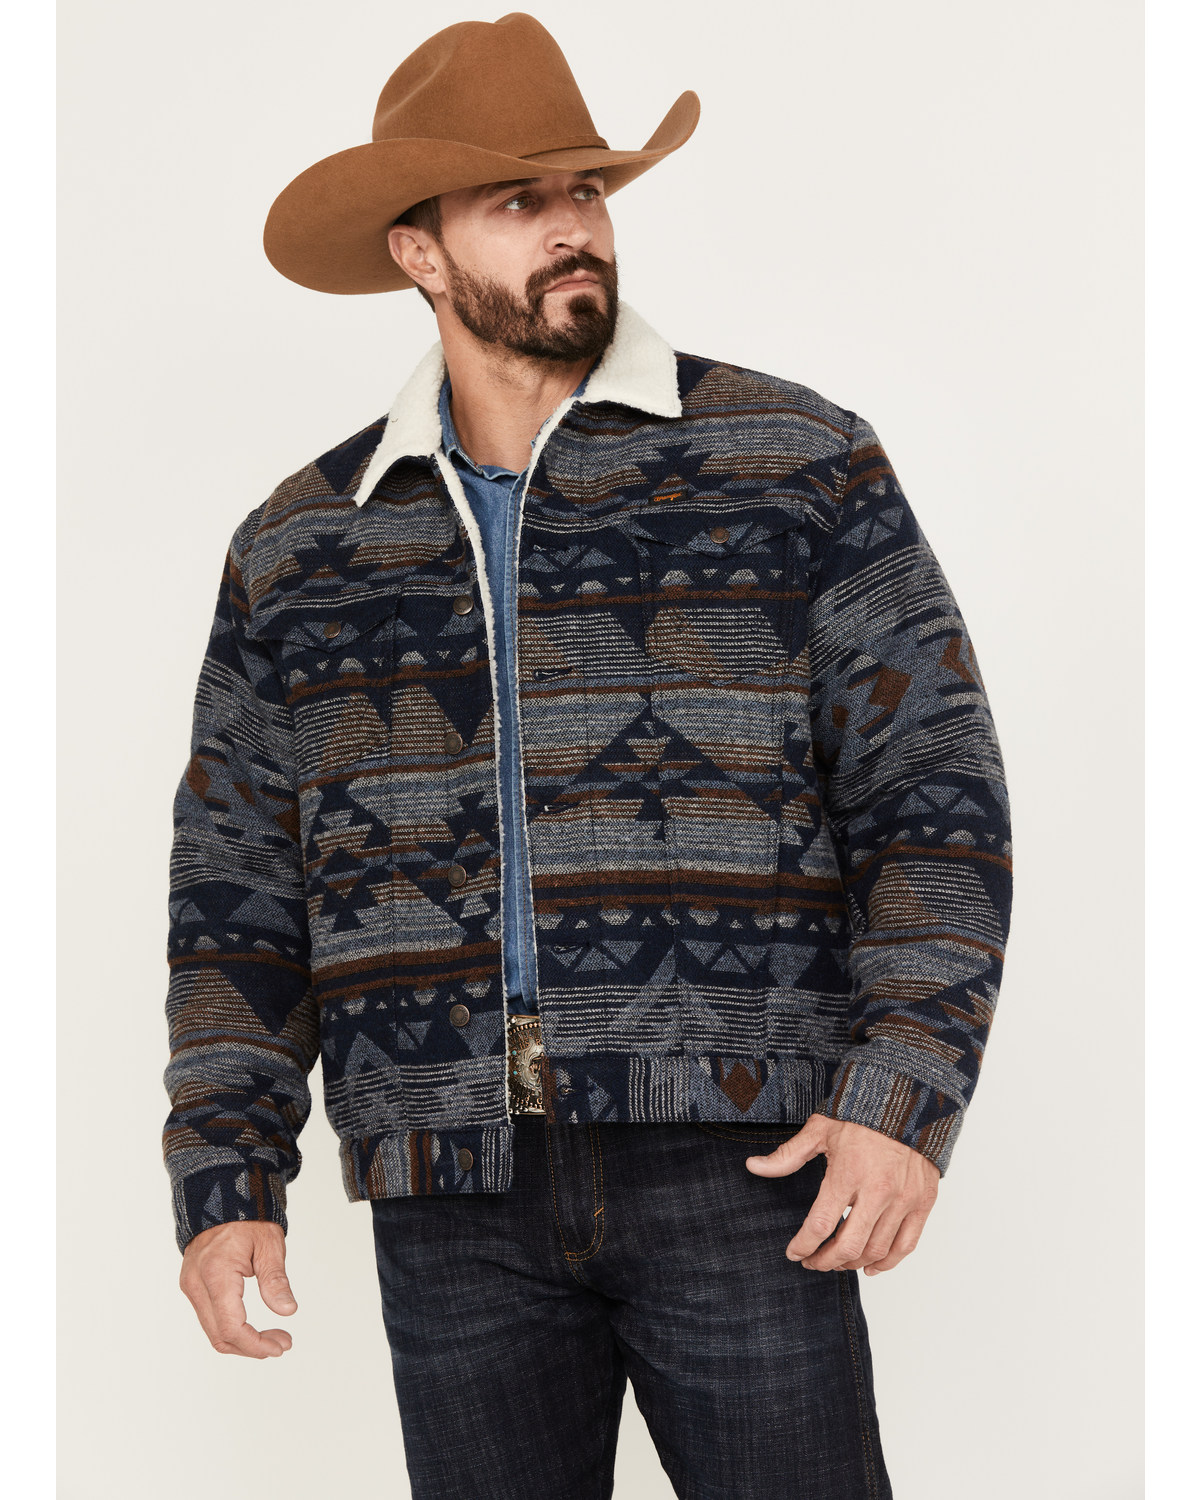 Wrangler Men's Southwestern Print Sherpa Button Down Jacquard Jacket